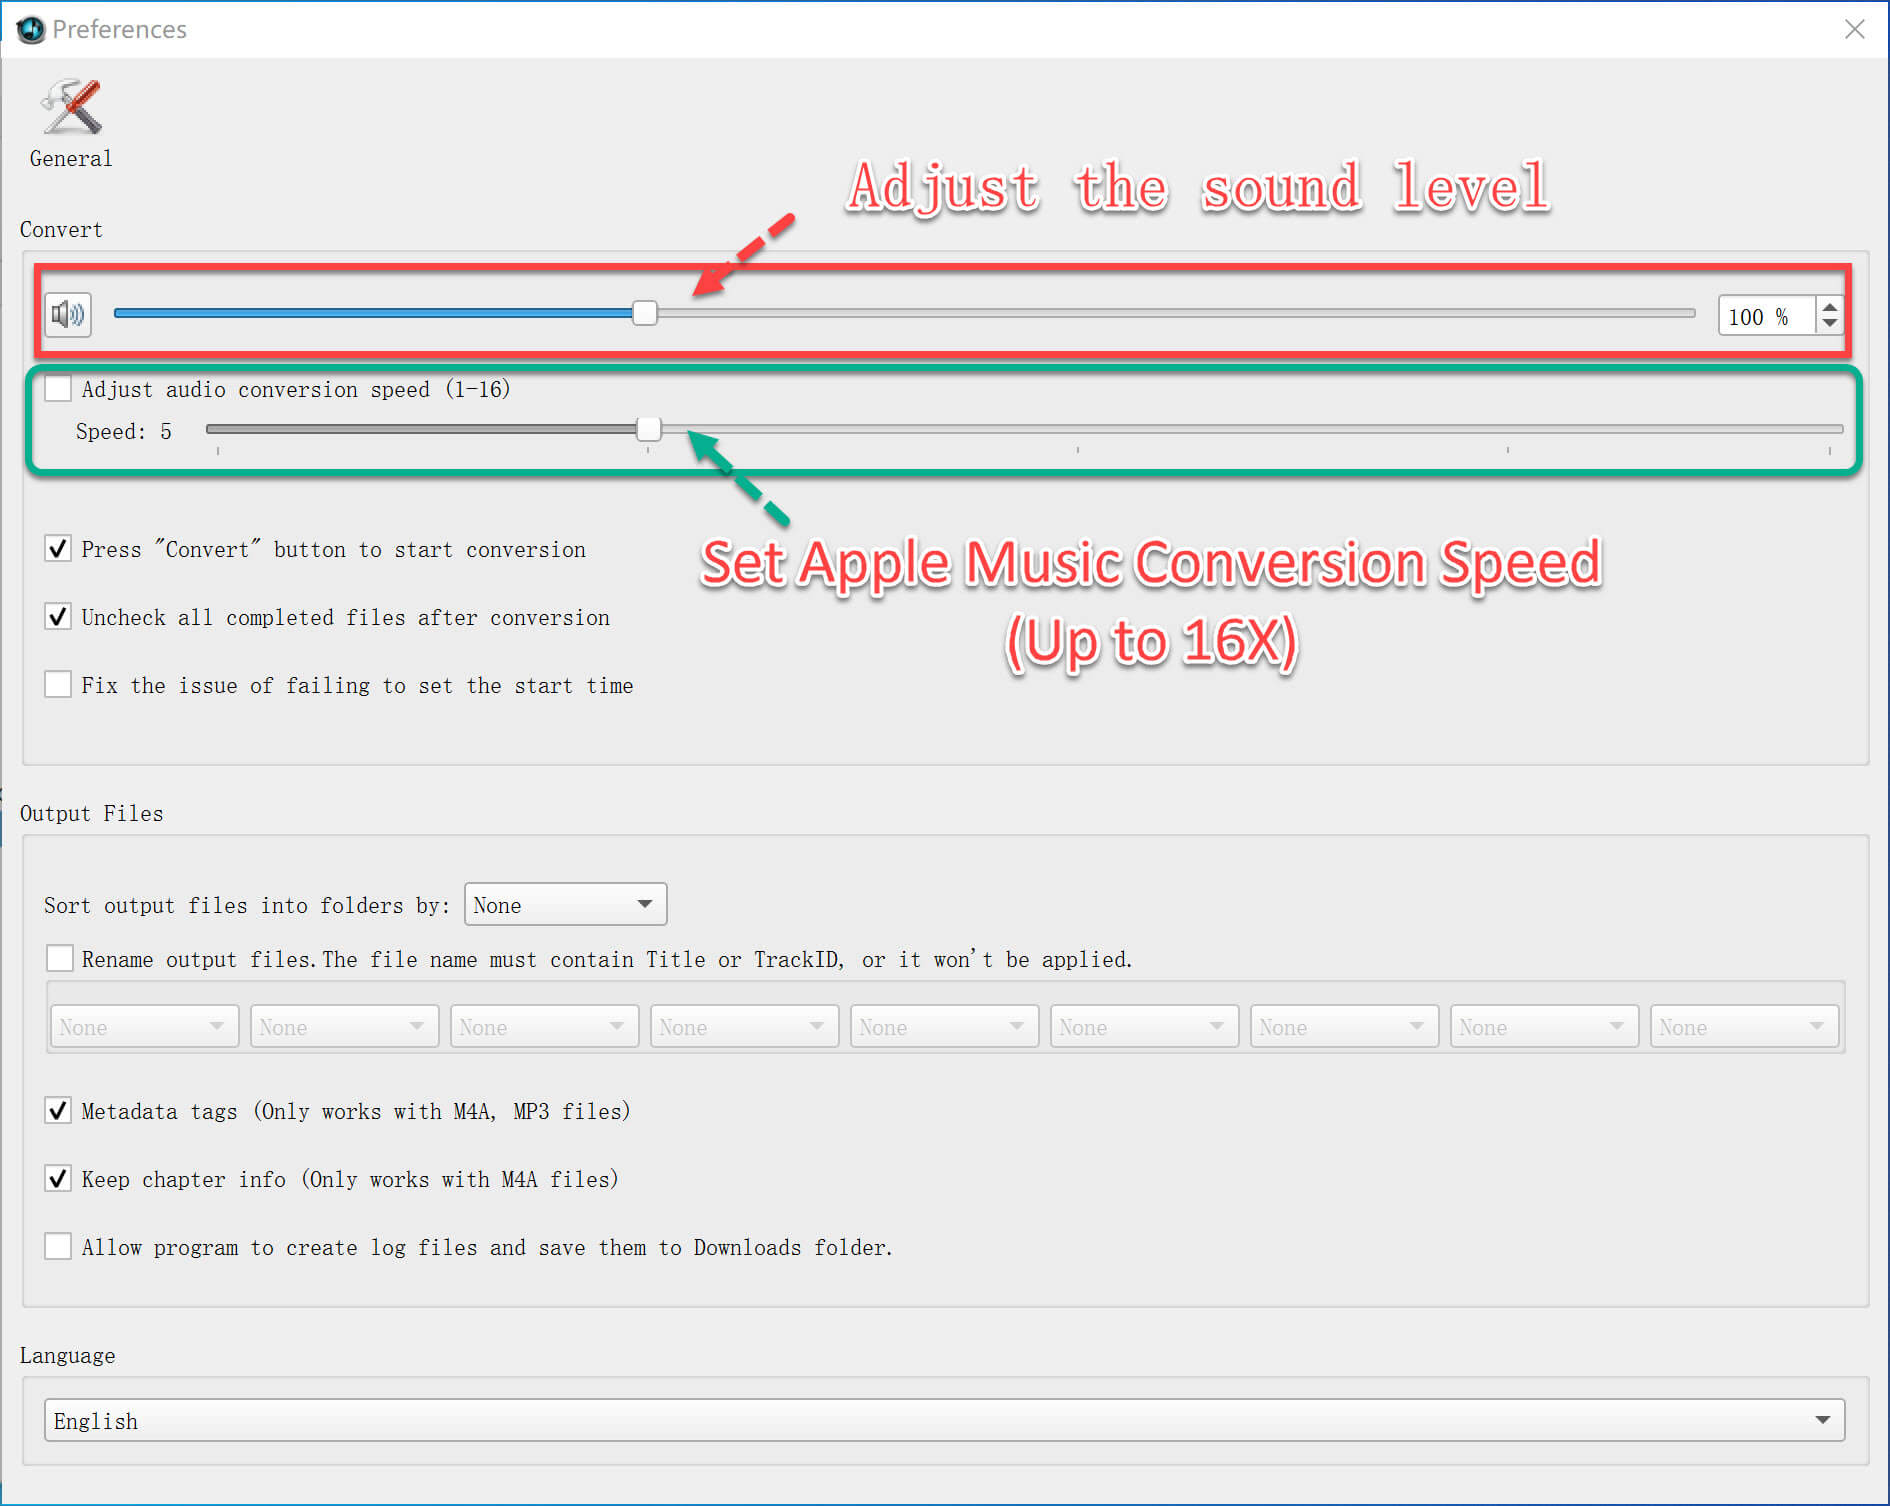 конвертировать файлы Apple Music со скоростью конвертации 16X